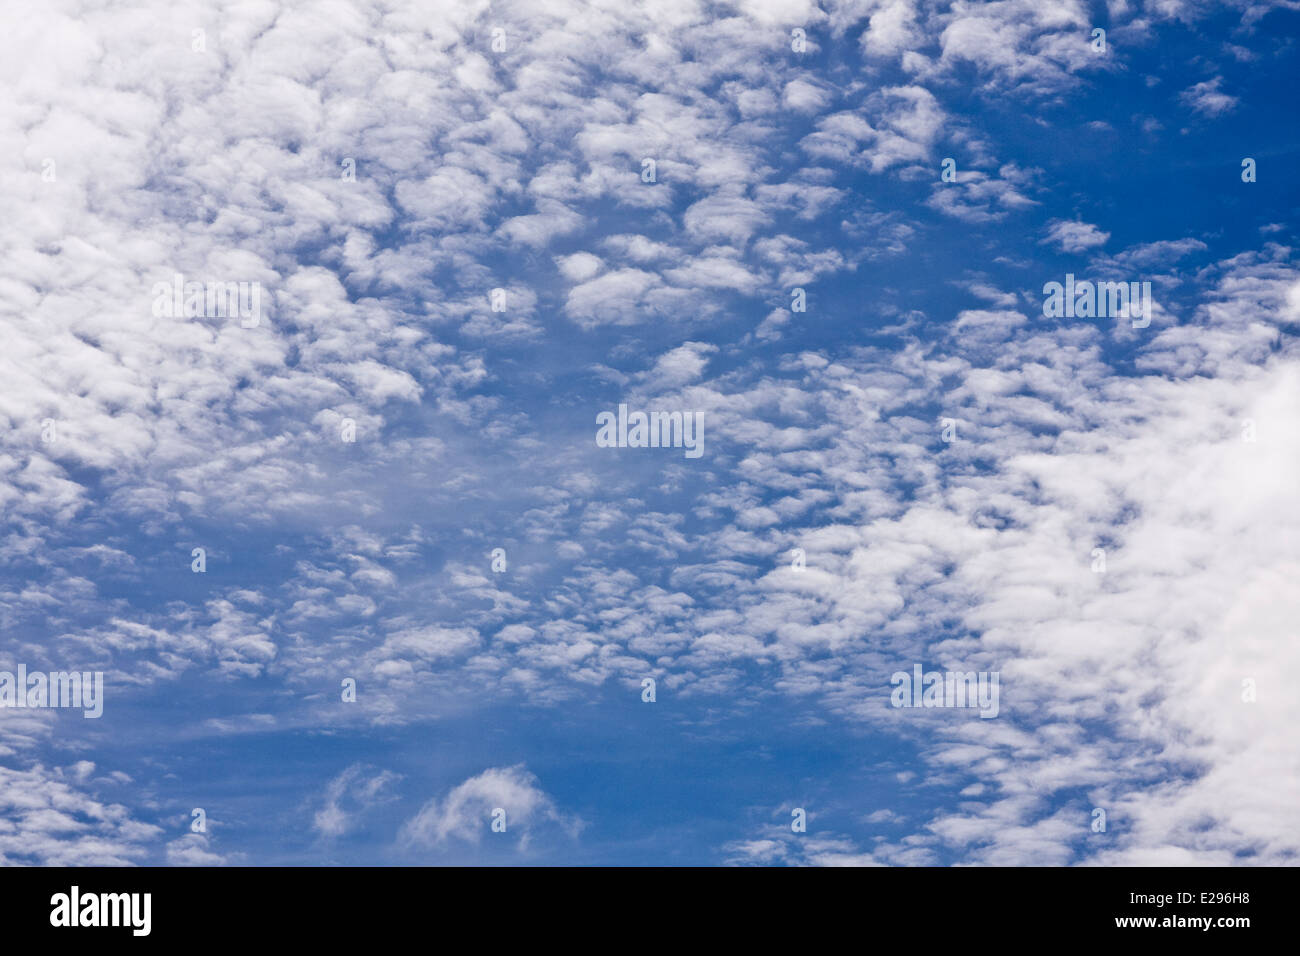 Tiefflug "Herringbone" oder "Makrele" Wolken bilden ungewöhnliche Muster in den Himmel über Dundee, UK Stockfoto